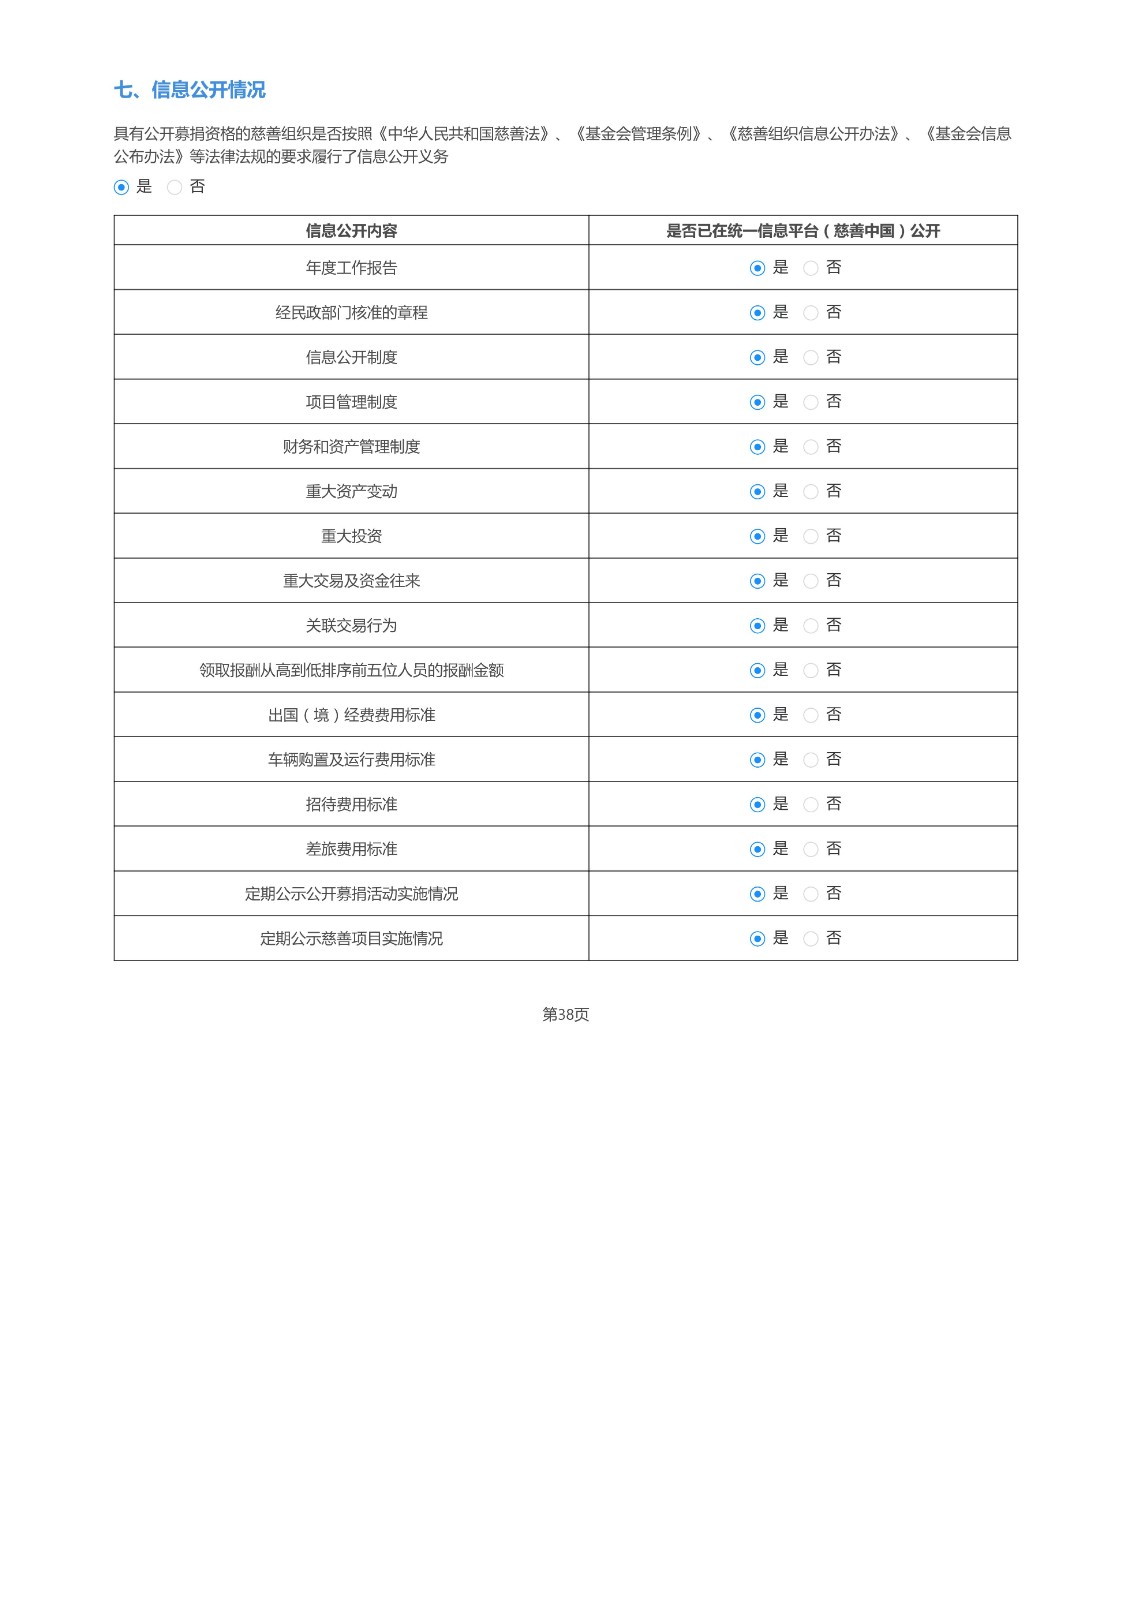 沈阳市华易公益基金会2022年度工作报告_63.jpg